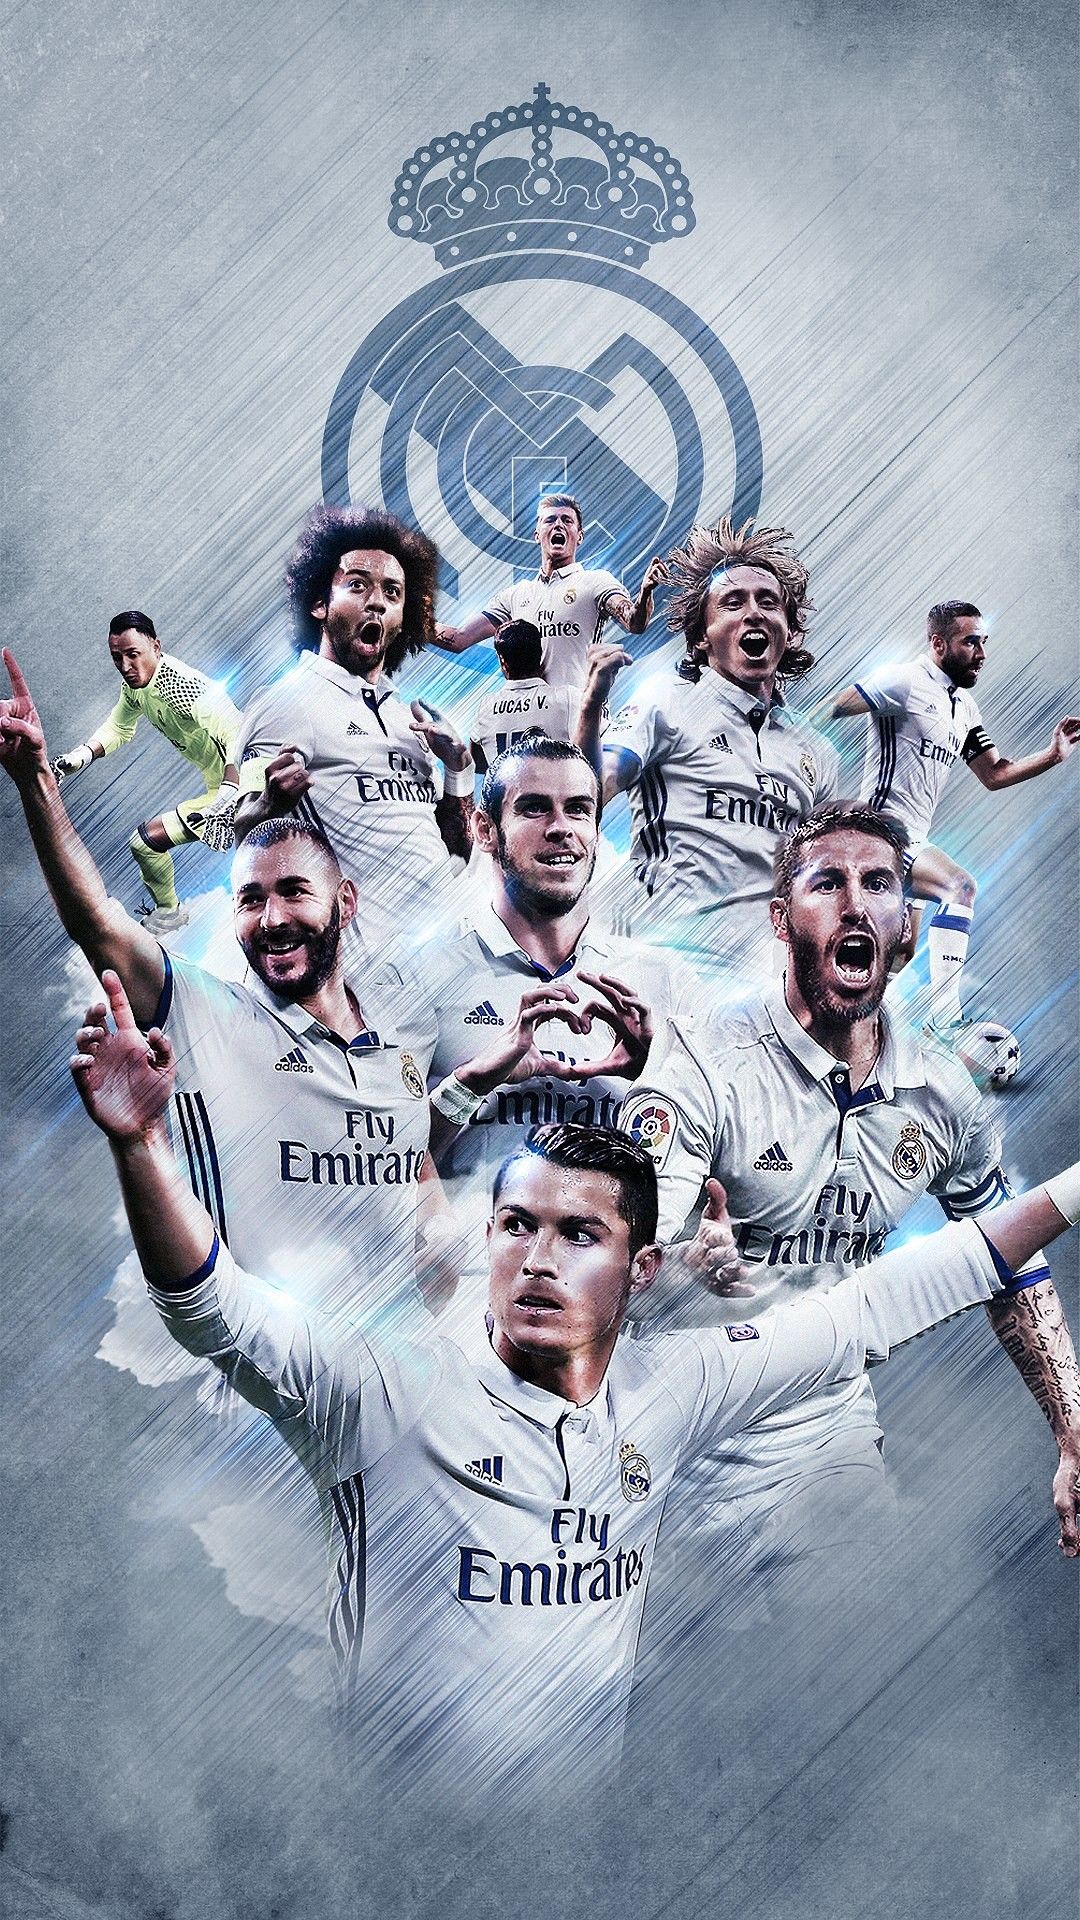 Các hình nền Real Madrid Team wallpapers sẽ khiến bạn cảm thấy như một thành viên chính thức của đội bóng. Với những hình ảnh cầu thủ và logo chính thức của Real, bạn có thể thể hiện sự ủng hộ và tình yêu cho đội bóng một cách rõ ràng nhất.